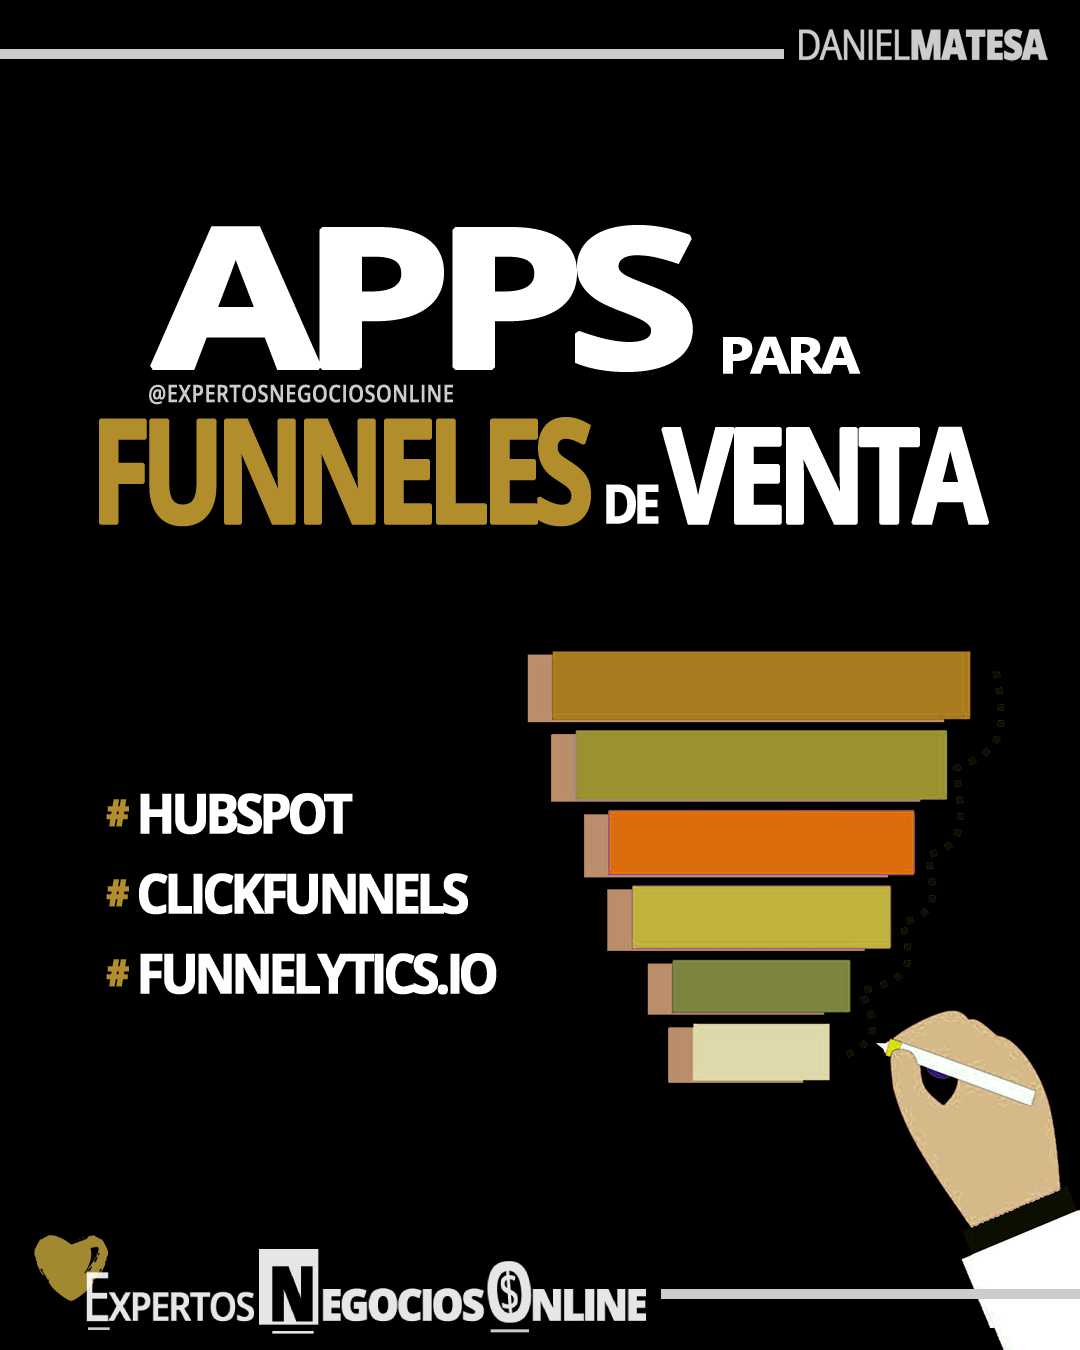 funnel apps - como hacer un funnel de ventas